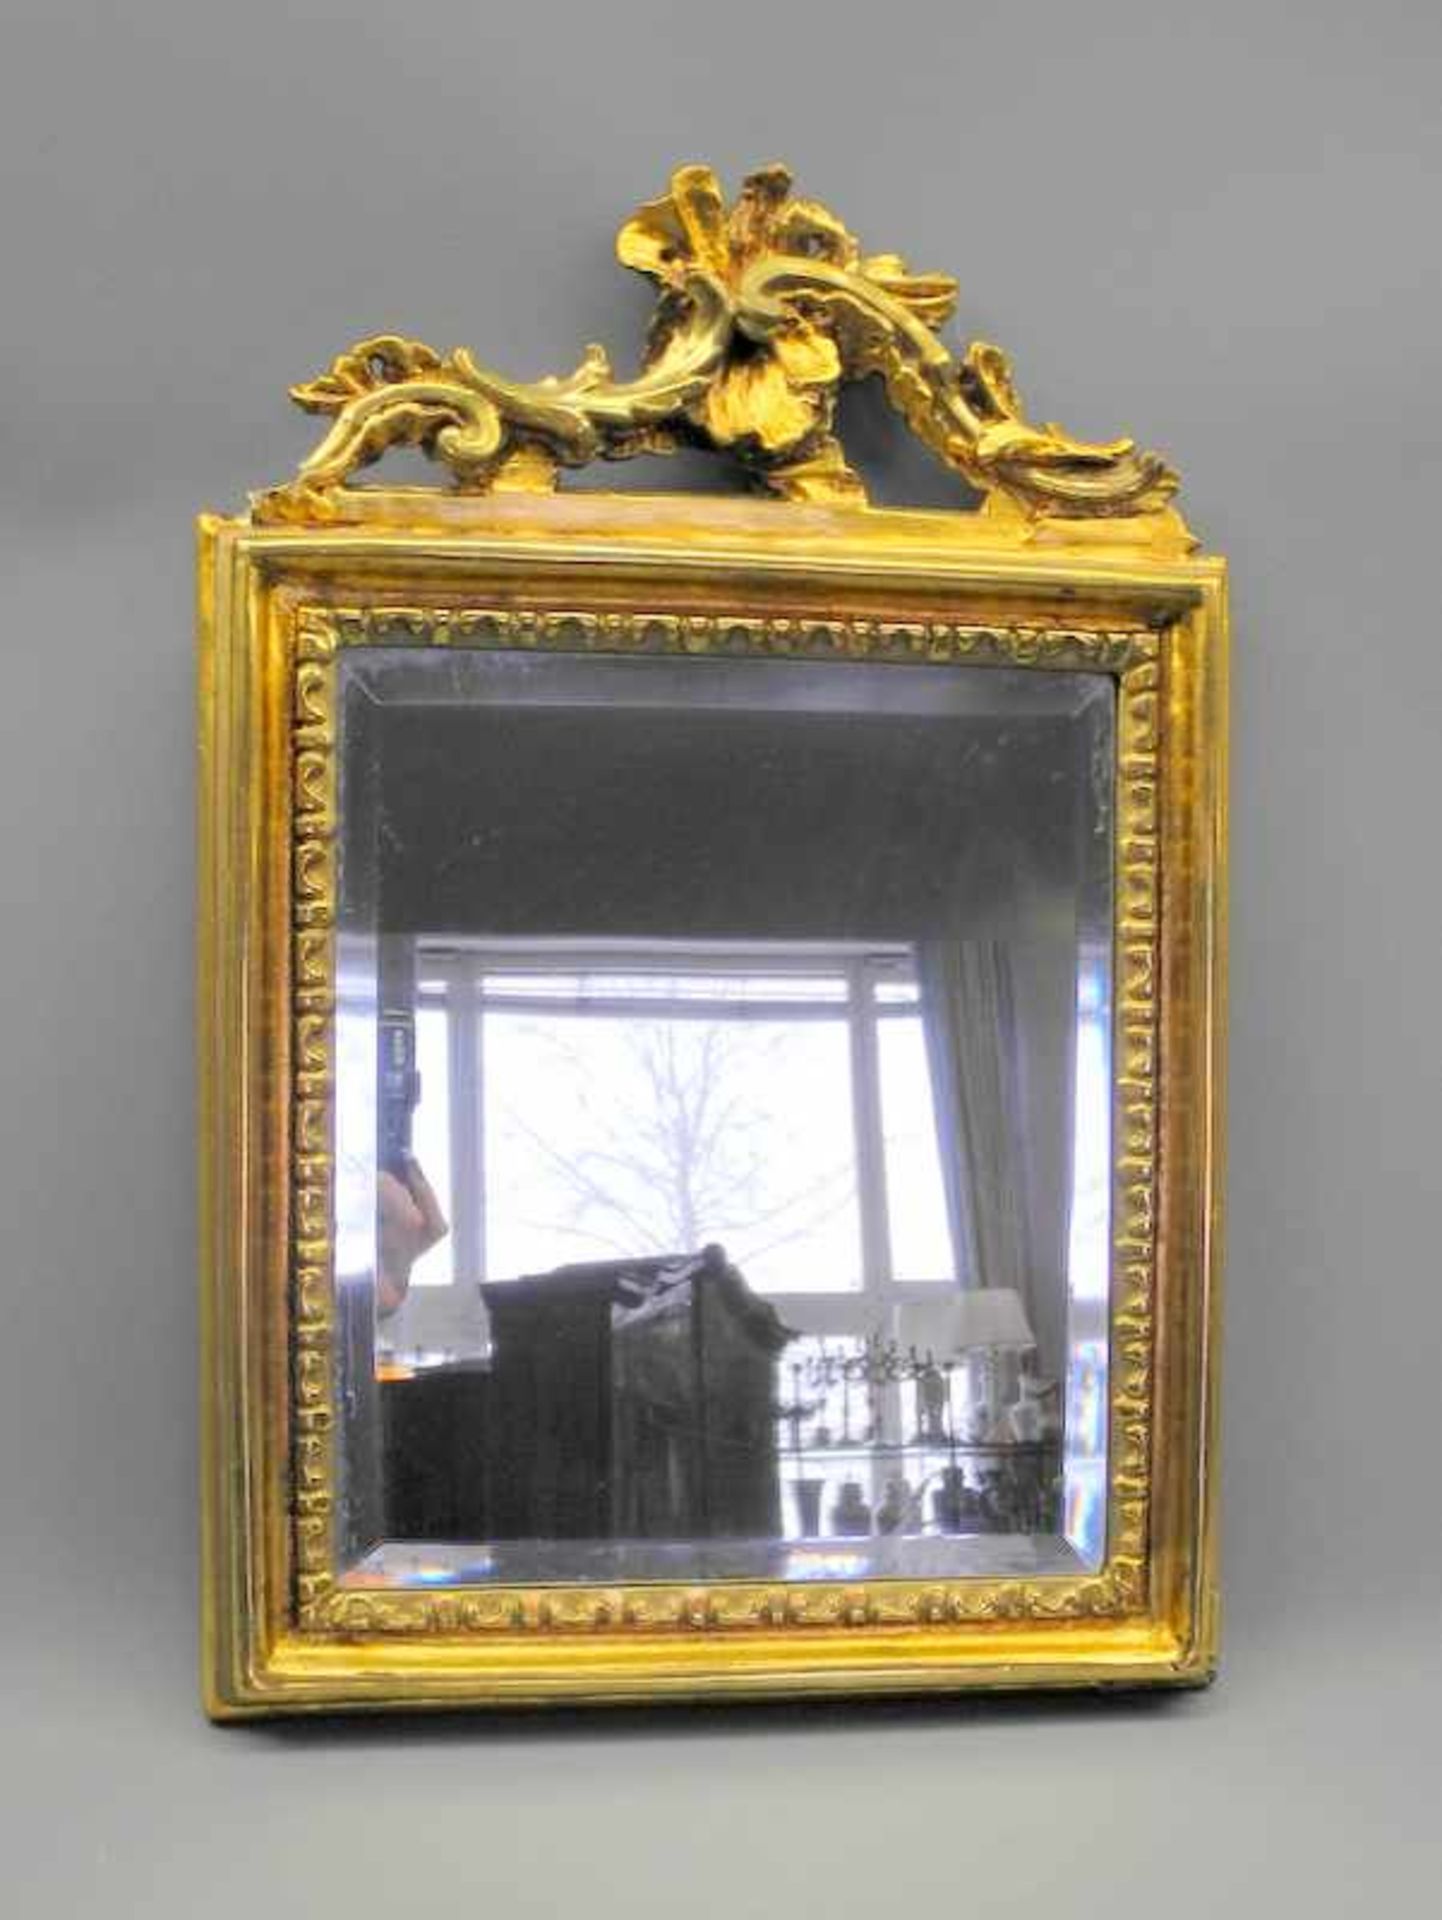 Kompakter WandspiegelHolz geschnitzt, goldfarben bemalt/Spiegelglas. Rehteckiger Spiegel mit